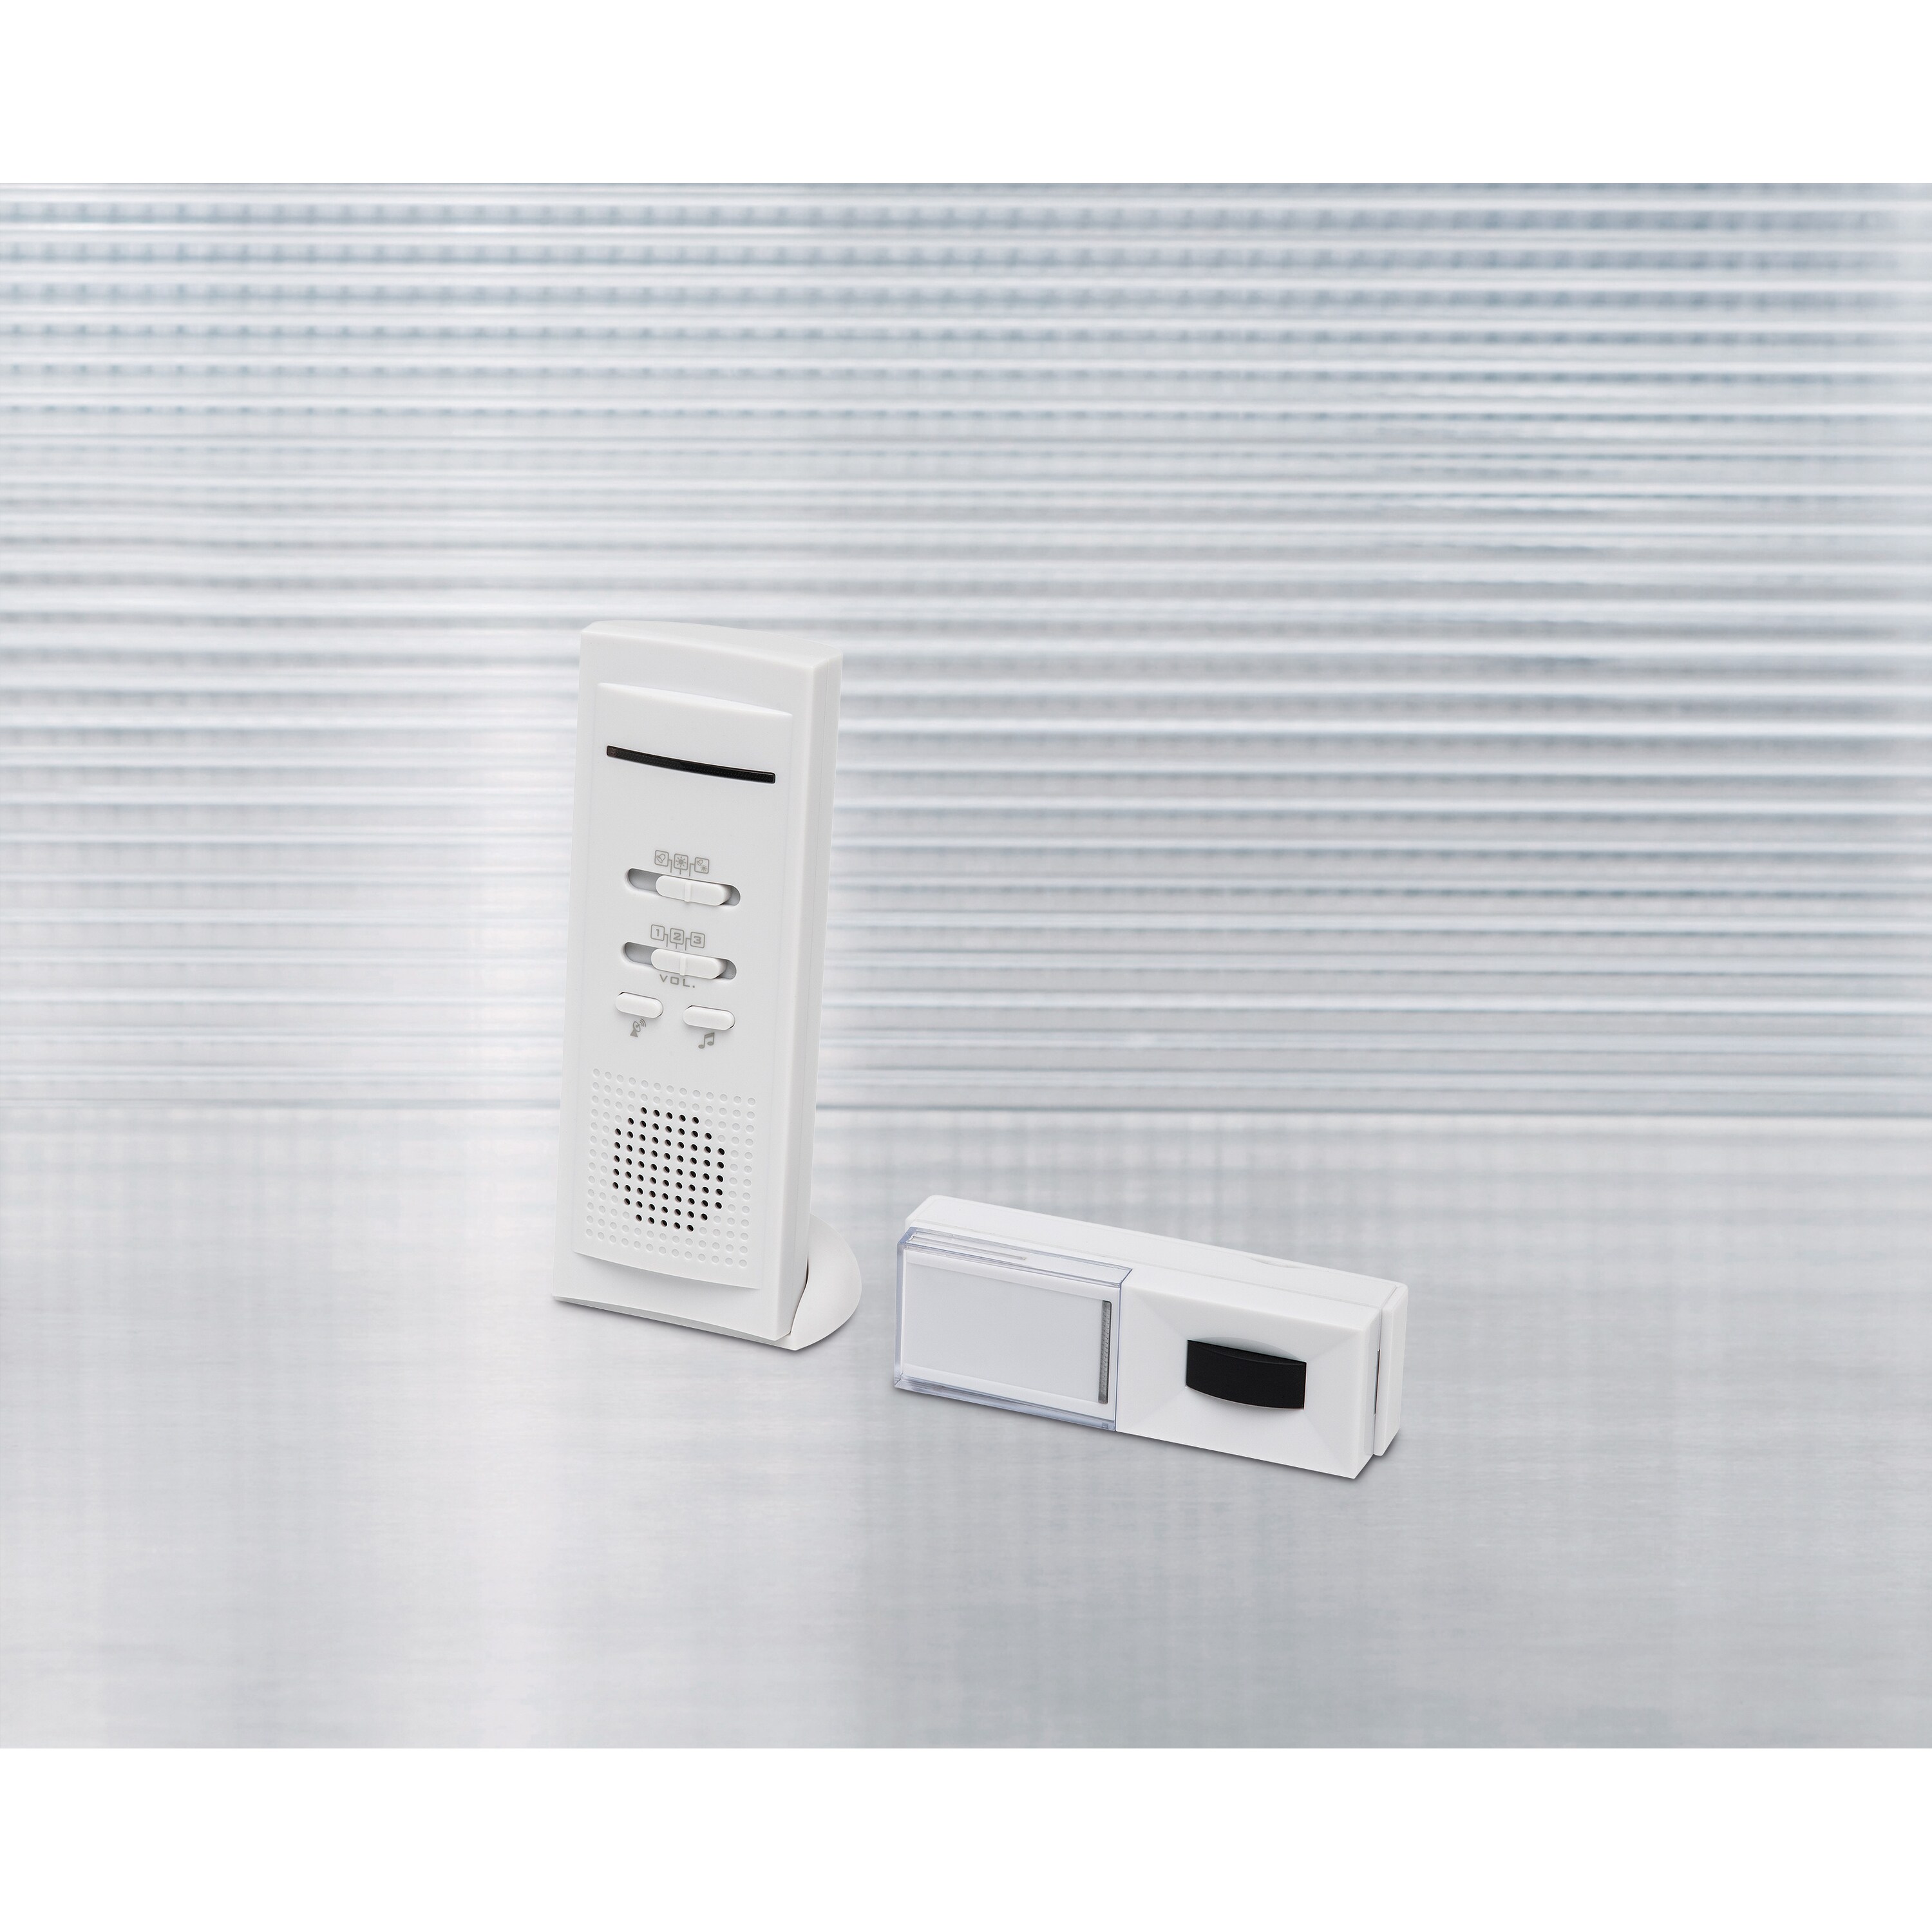 MEDION® Funktürklingel MD 16179, 16 verschiedene Töne, LED-Kontrollanzeige, spritzwassergeschützt, Selbstlernfunktion, bis max. 100 m Reichweite